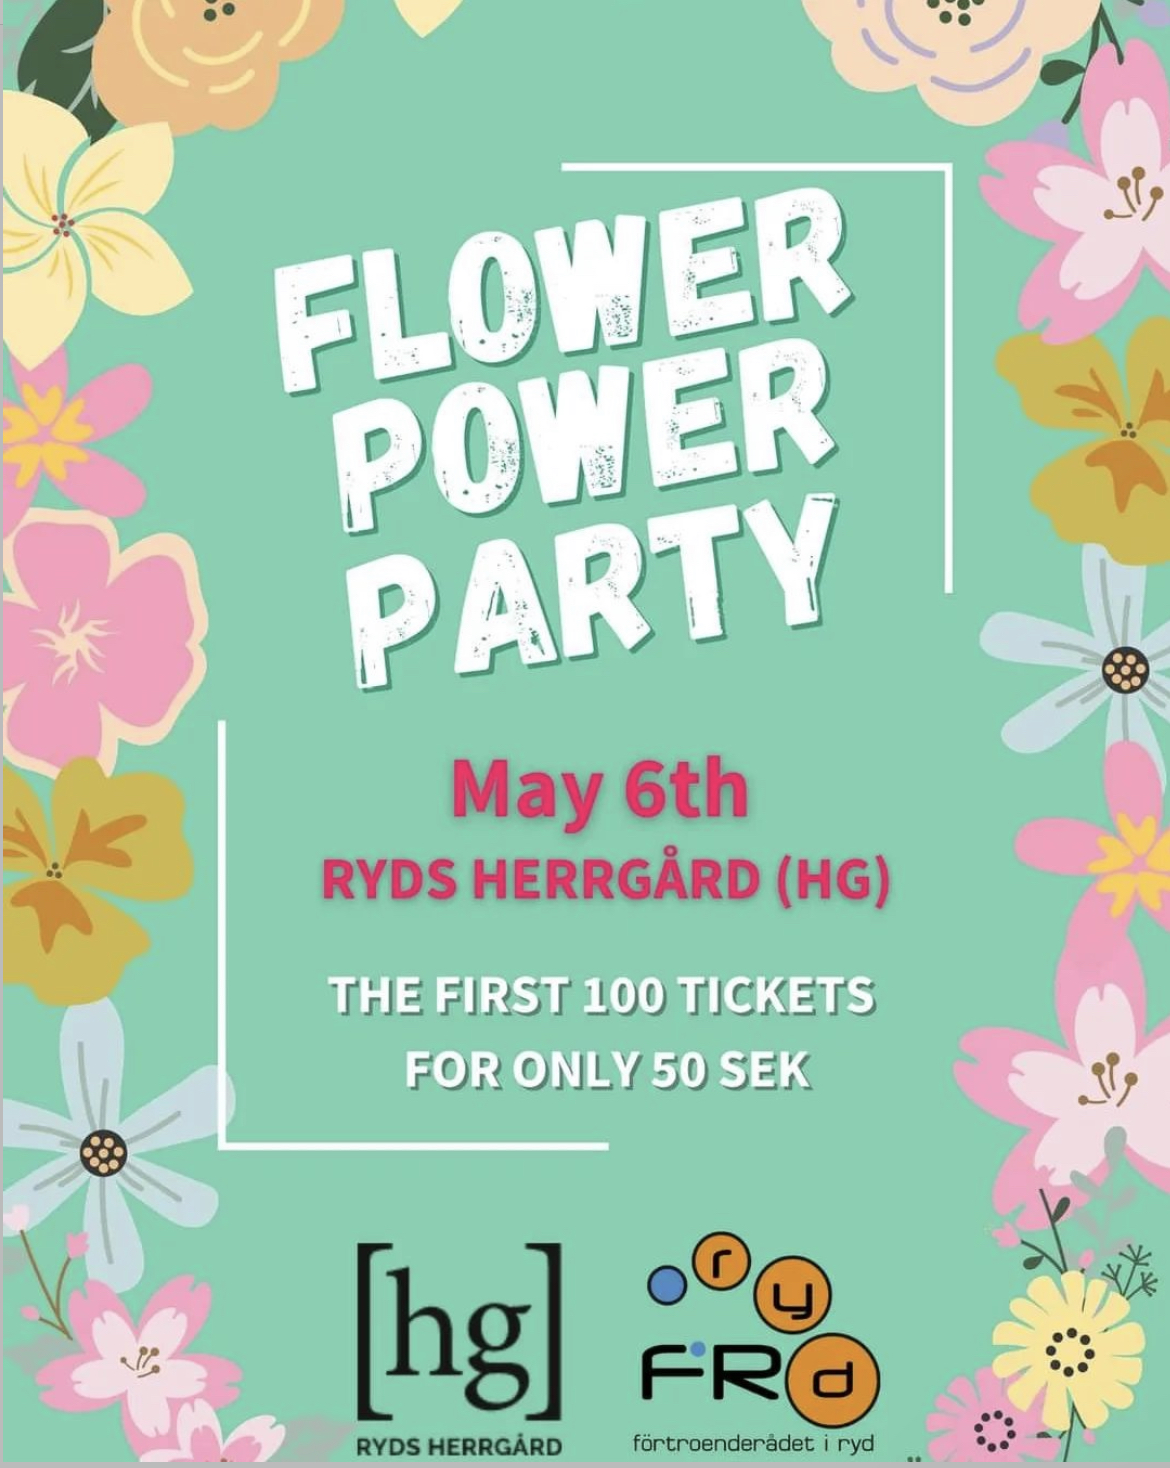 FR Ryd Flower Power Party